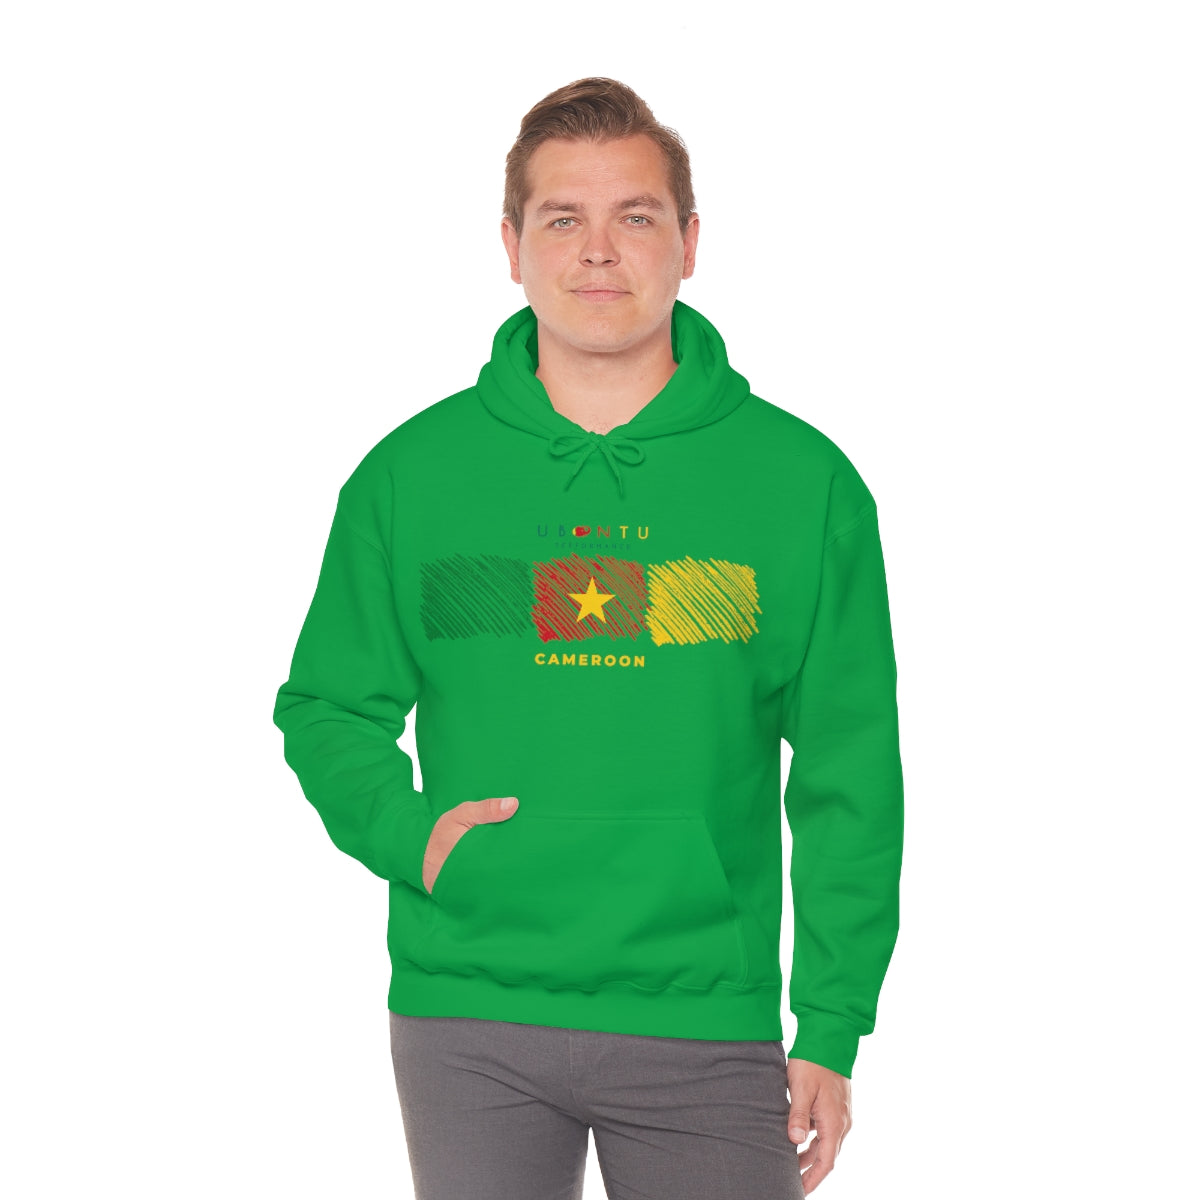 Cameroon flag colors Men's  Hooded Sweatshirt soccer football fan gift hoodie